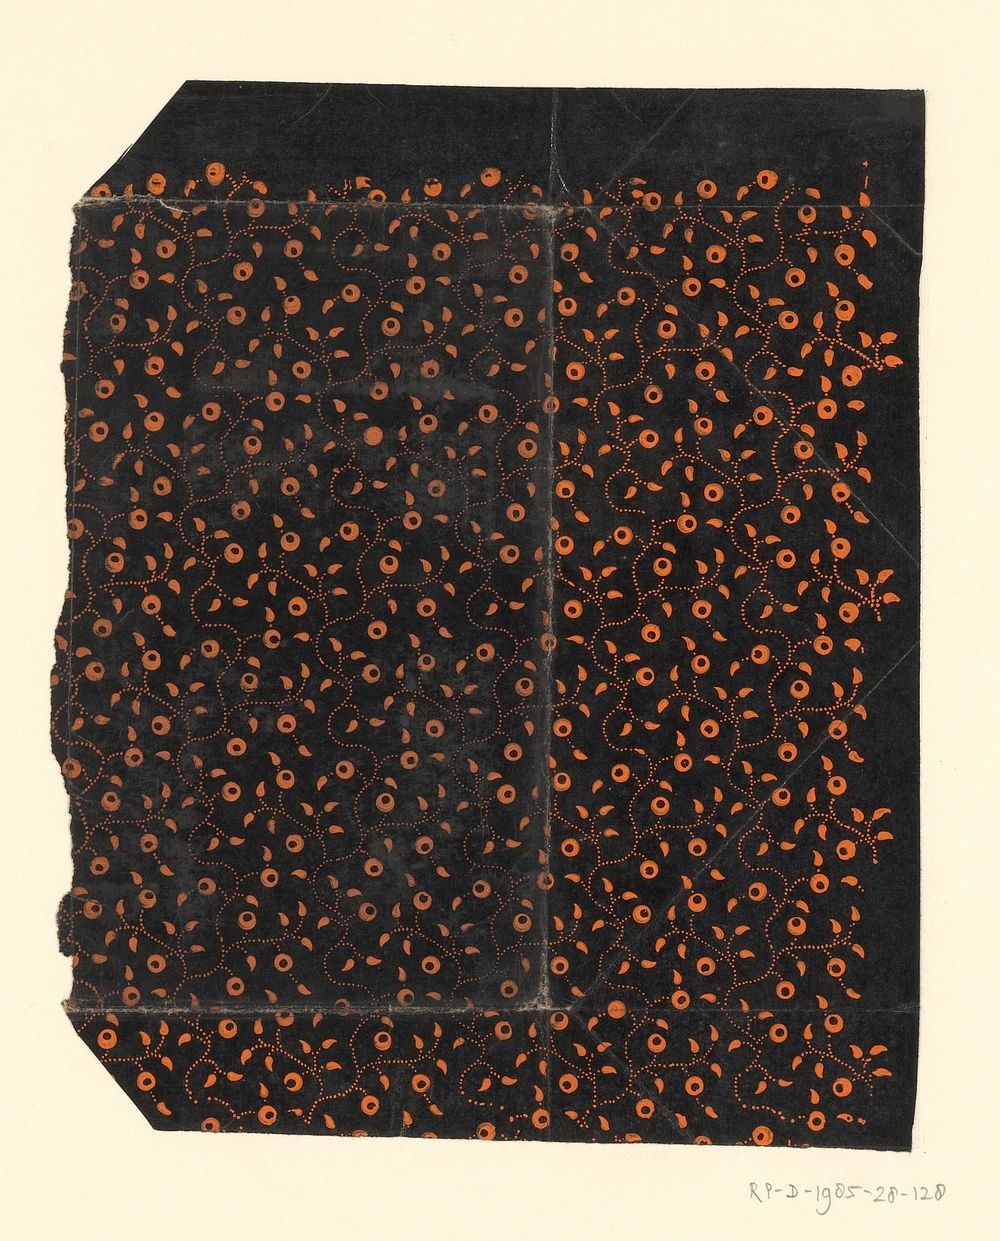 Blad met strooipatroon van ranken met vruchten en blaadjes (1750 - 1900) by anonymous